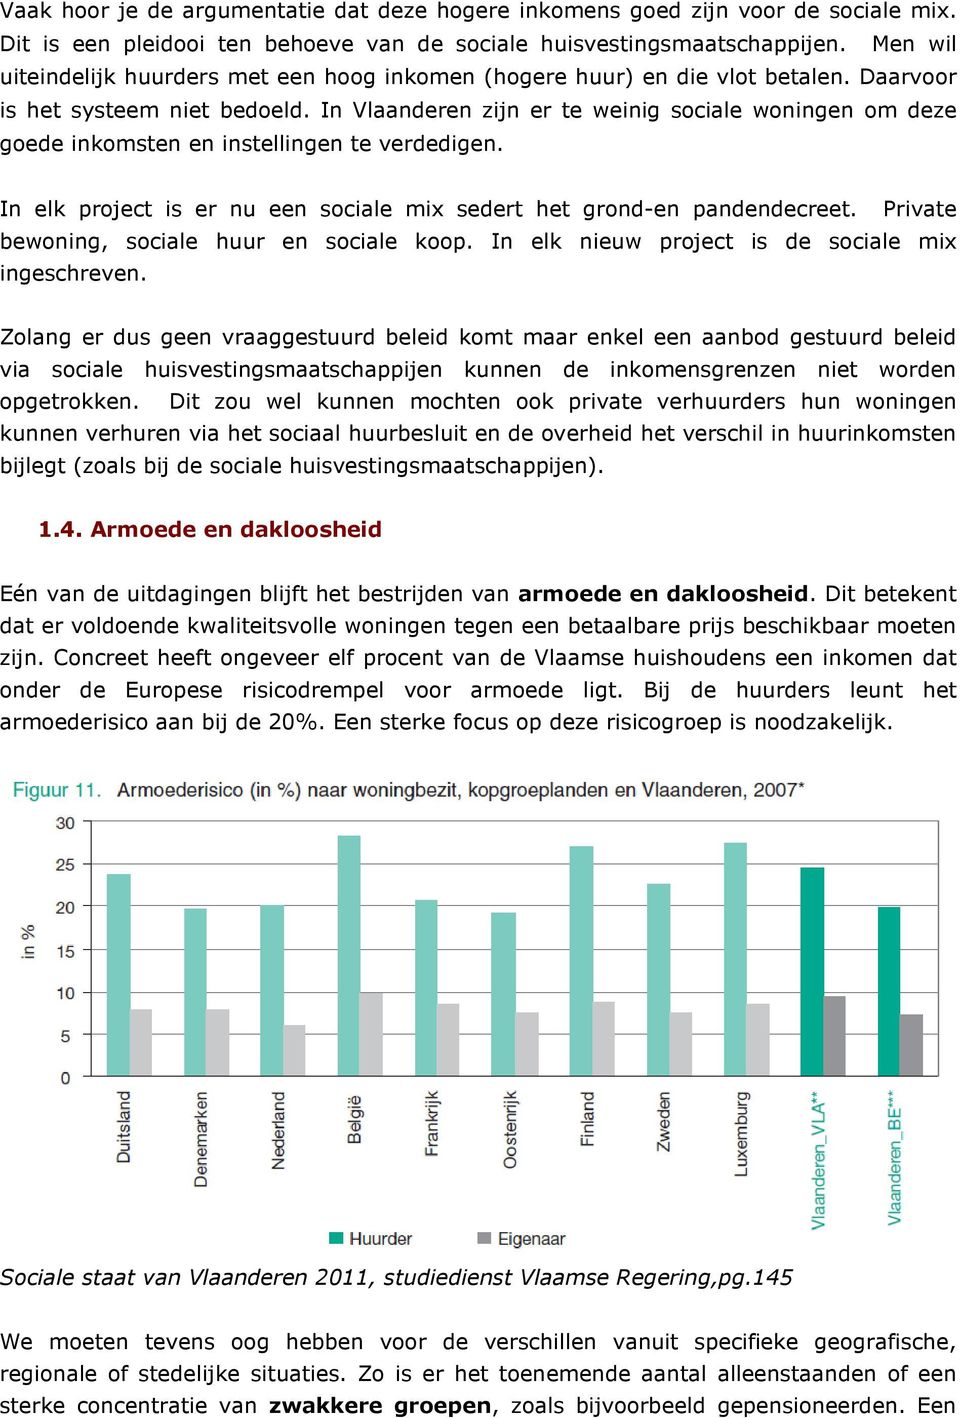 In Vlaanderen zijn er te weinig sociale woningen om deze goede inkomsten en instellingen te verdedigen. In elk project is er nu een sociale mix sedert het grond-en pandendecreet.